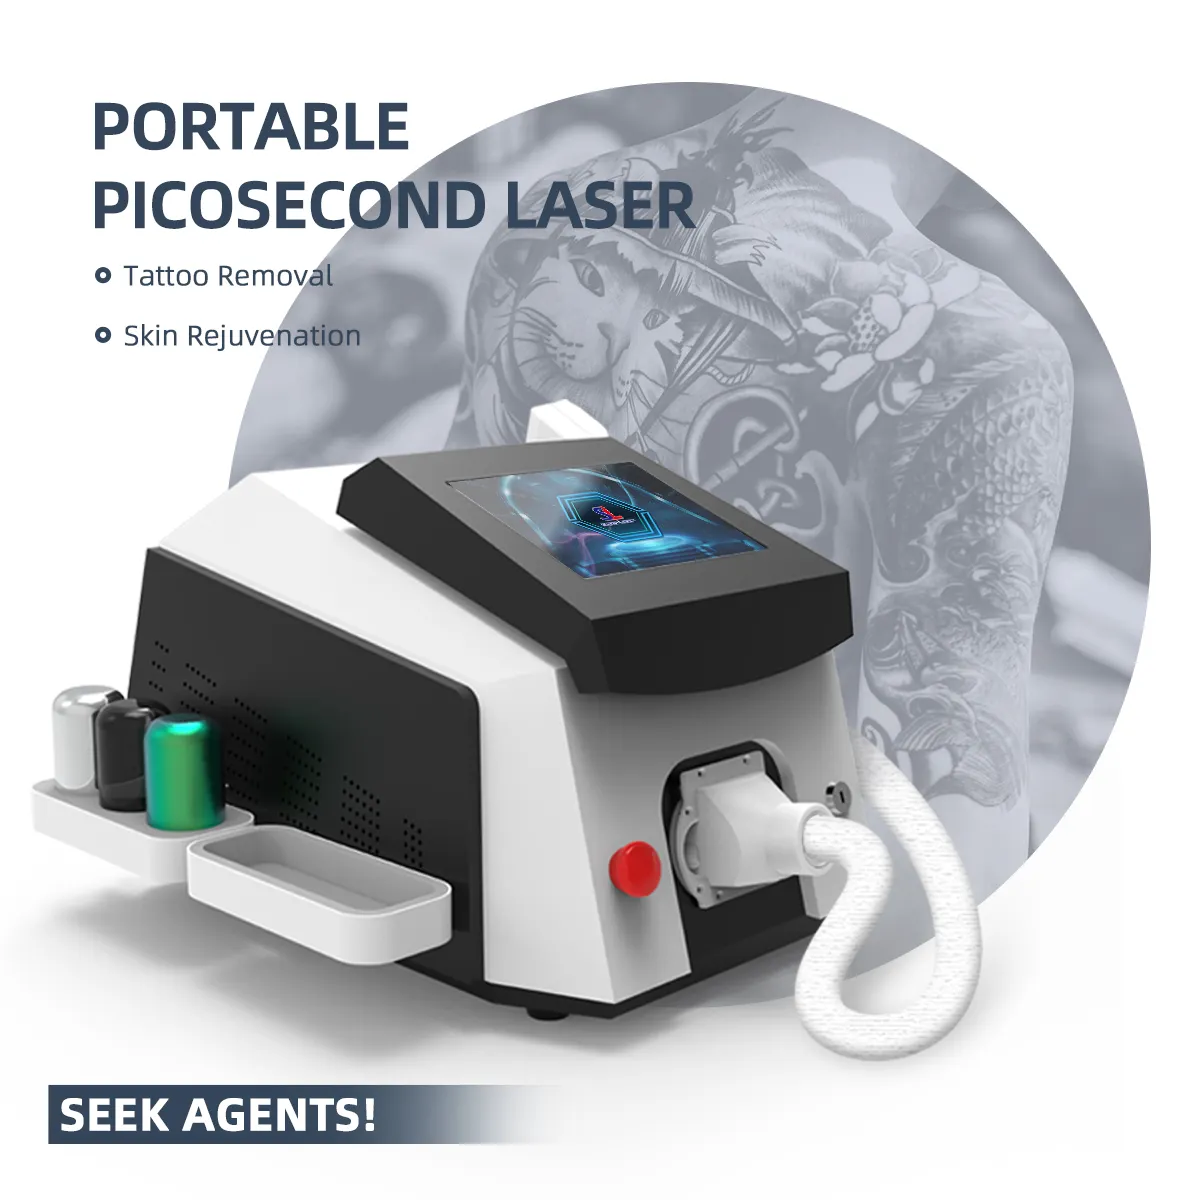 laser tattoo entfernungsgerät entfernen pikosekunden-laser haarentfernung und tattoo maschine nd yag mini q schaltete heim-laser